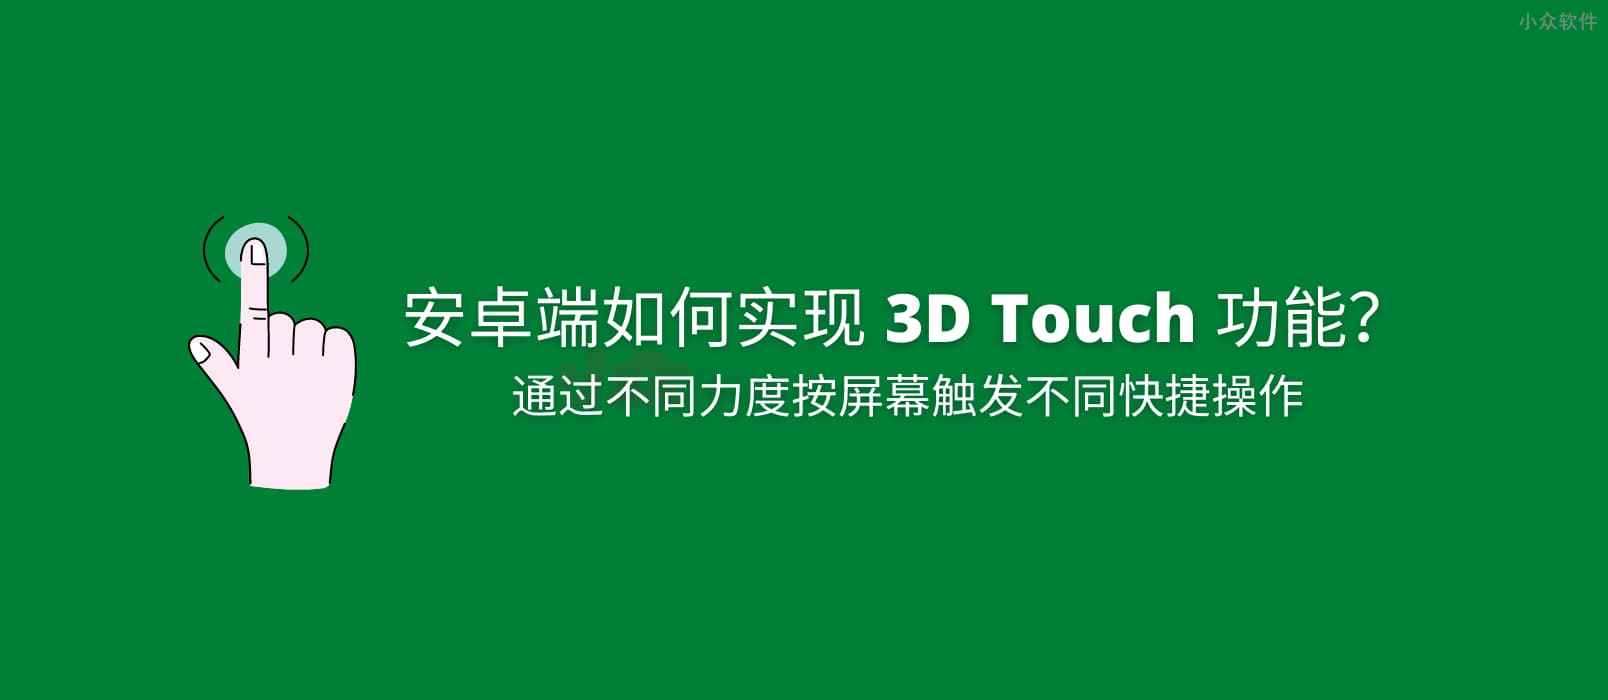 如何实现安卓端 3D Touch 功能？ 1